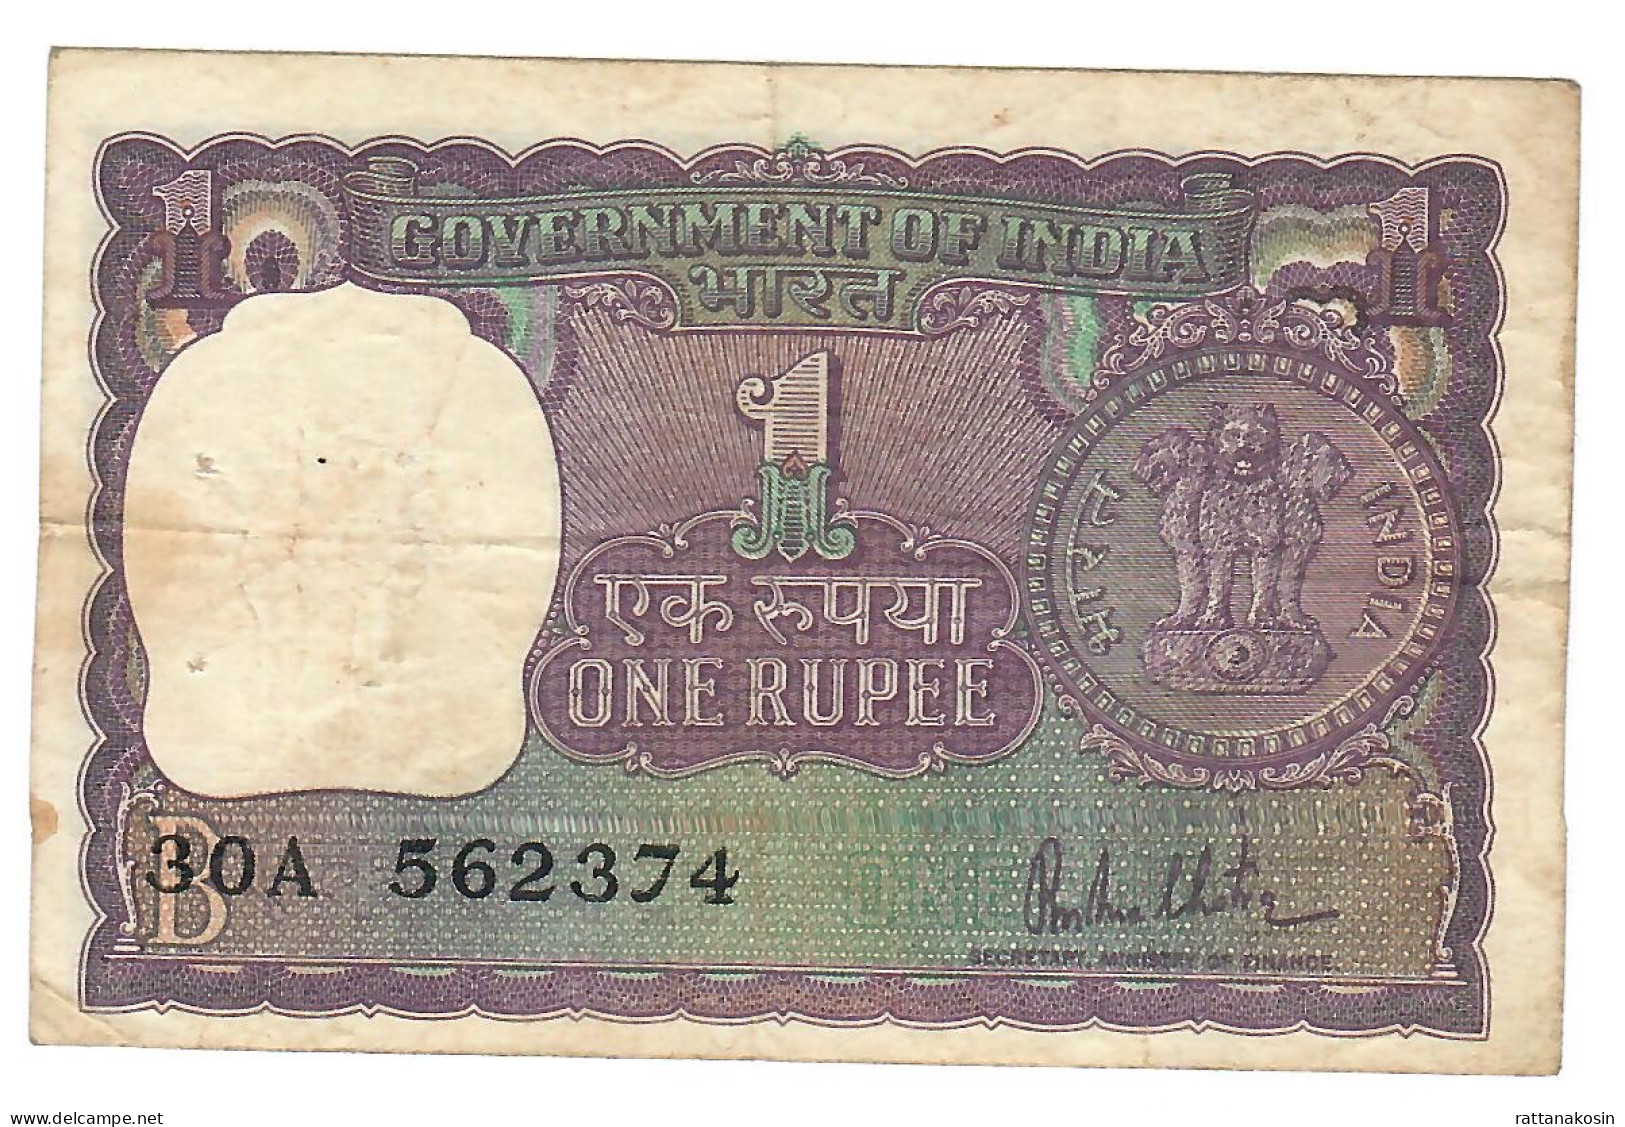 INDIA P77r 1 RUPEE 1980  Signature MALHOTRA  LETTER B    VF 2 P.h. - Inde